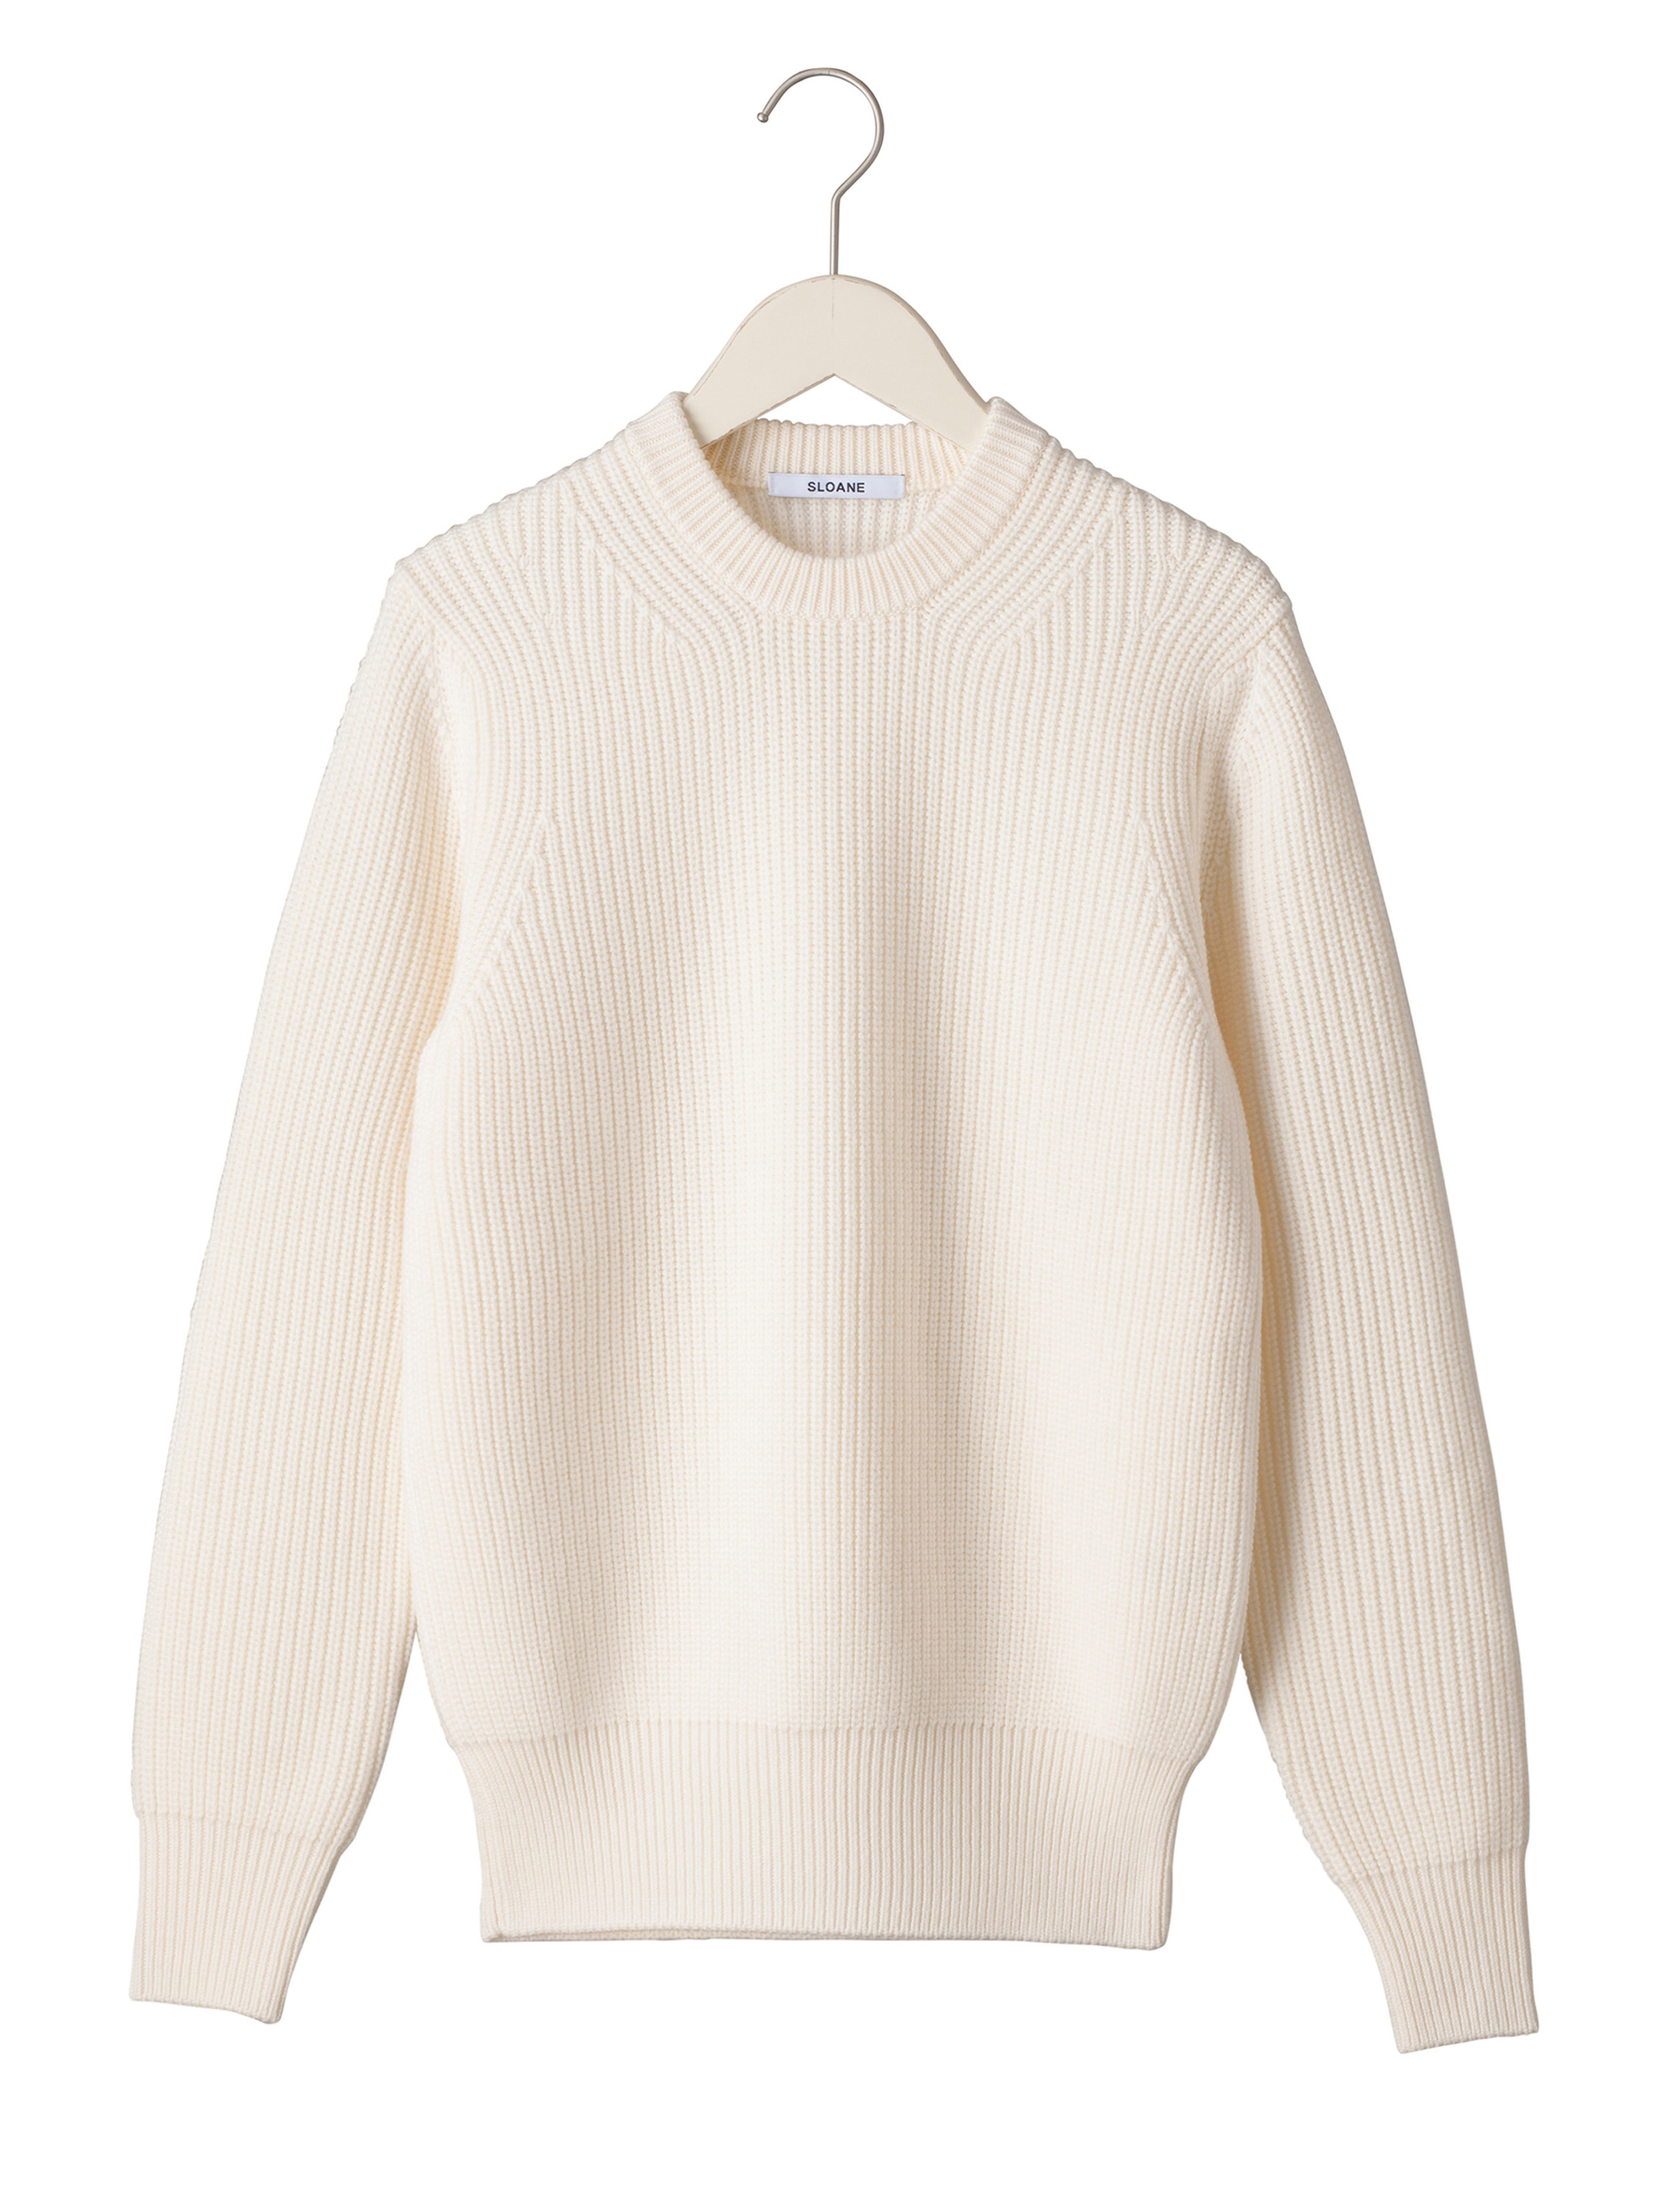 安い日本製 スローン 長袖セーター サイズ3 L - レッドの通販 by